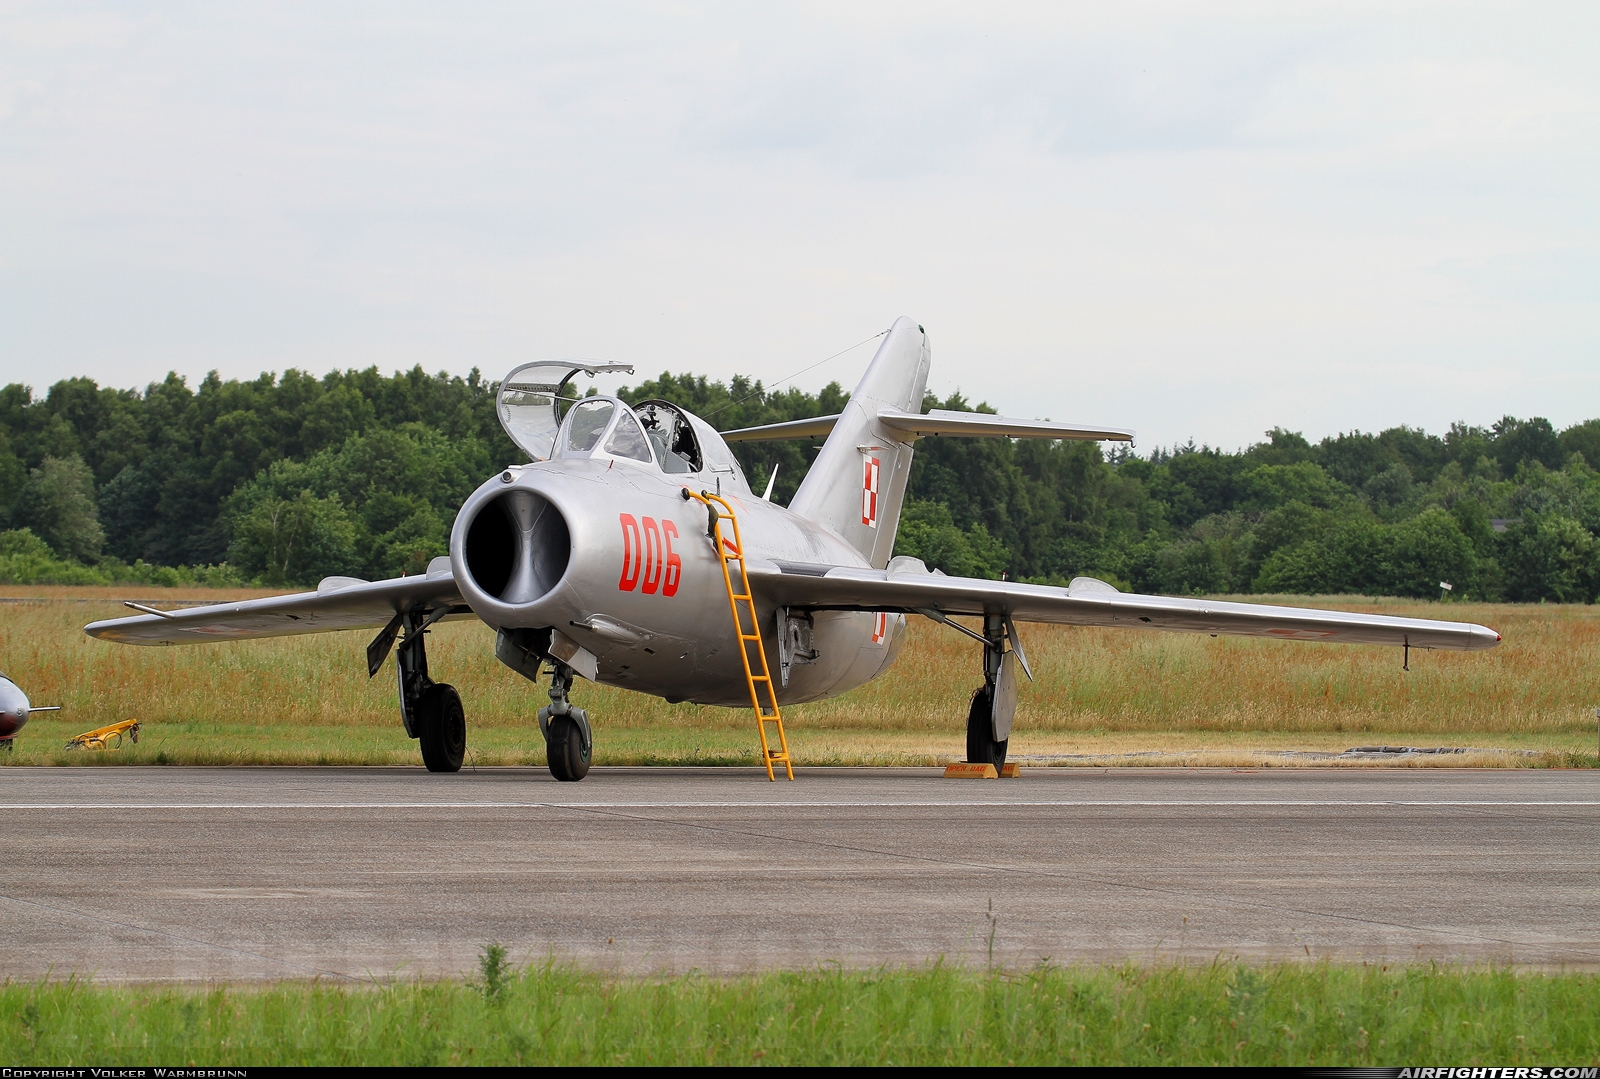 Private - Polskie Orly Mikoyan-Gurevich SBLim-2 SP-YNZ at Uden - Volkel (UDE / EHVK), Netherlands